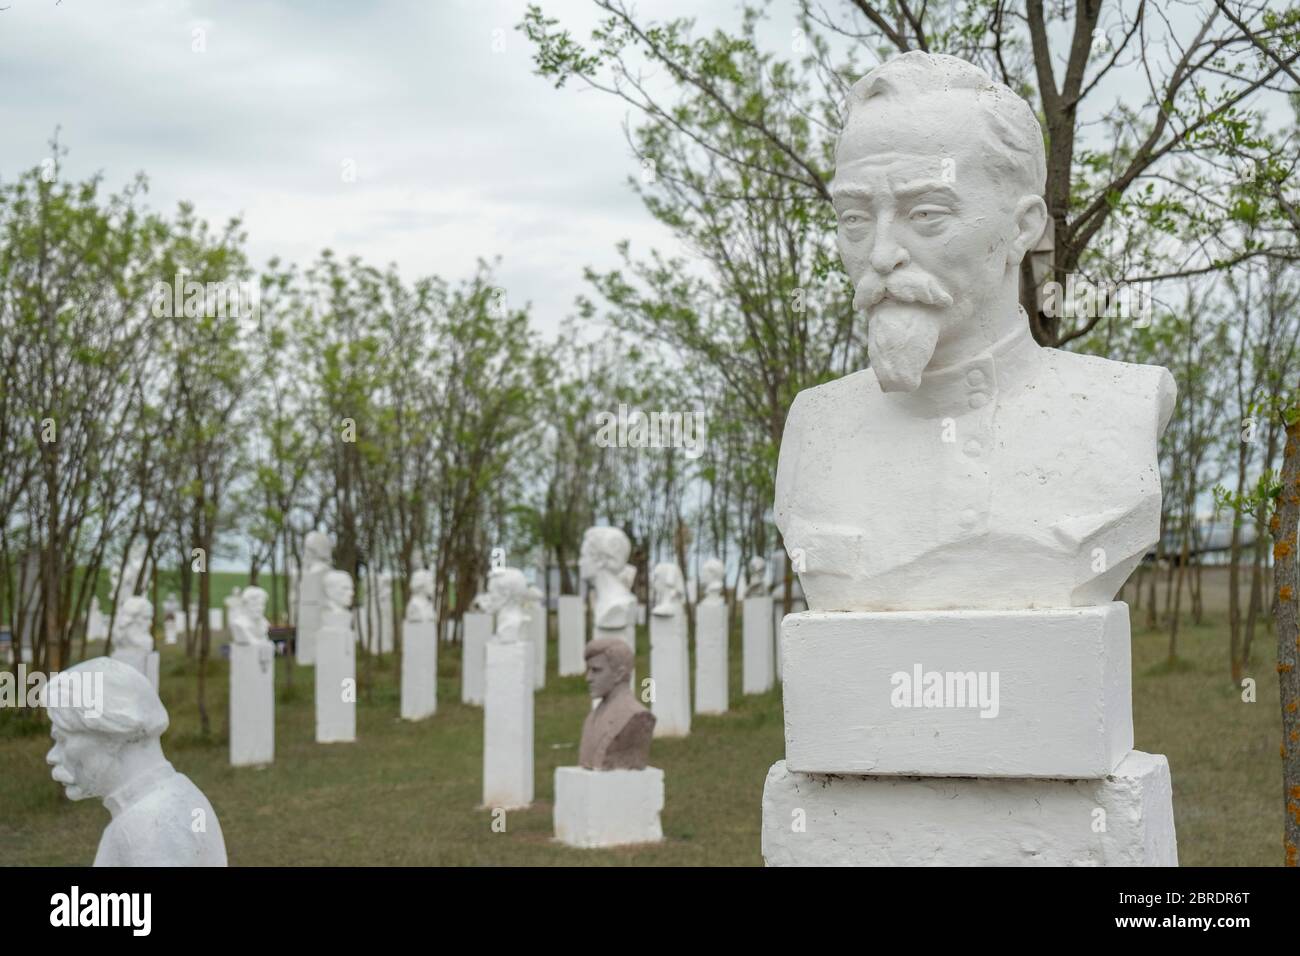 Buste de Felix Dzerzhinsky sur fond est groupe de sculptural de bustes autres leaders dans le Musée du réalisme socialiste. Frumushika Nova, Oblast d'Odessa, Ukraine, Europe de l'est Banque D'Images